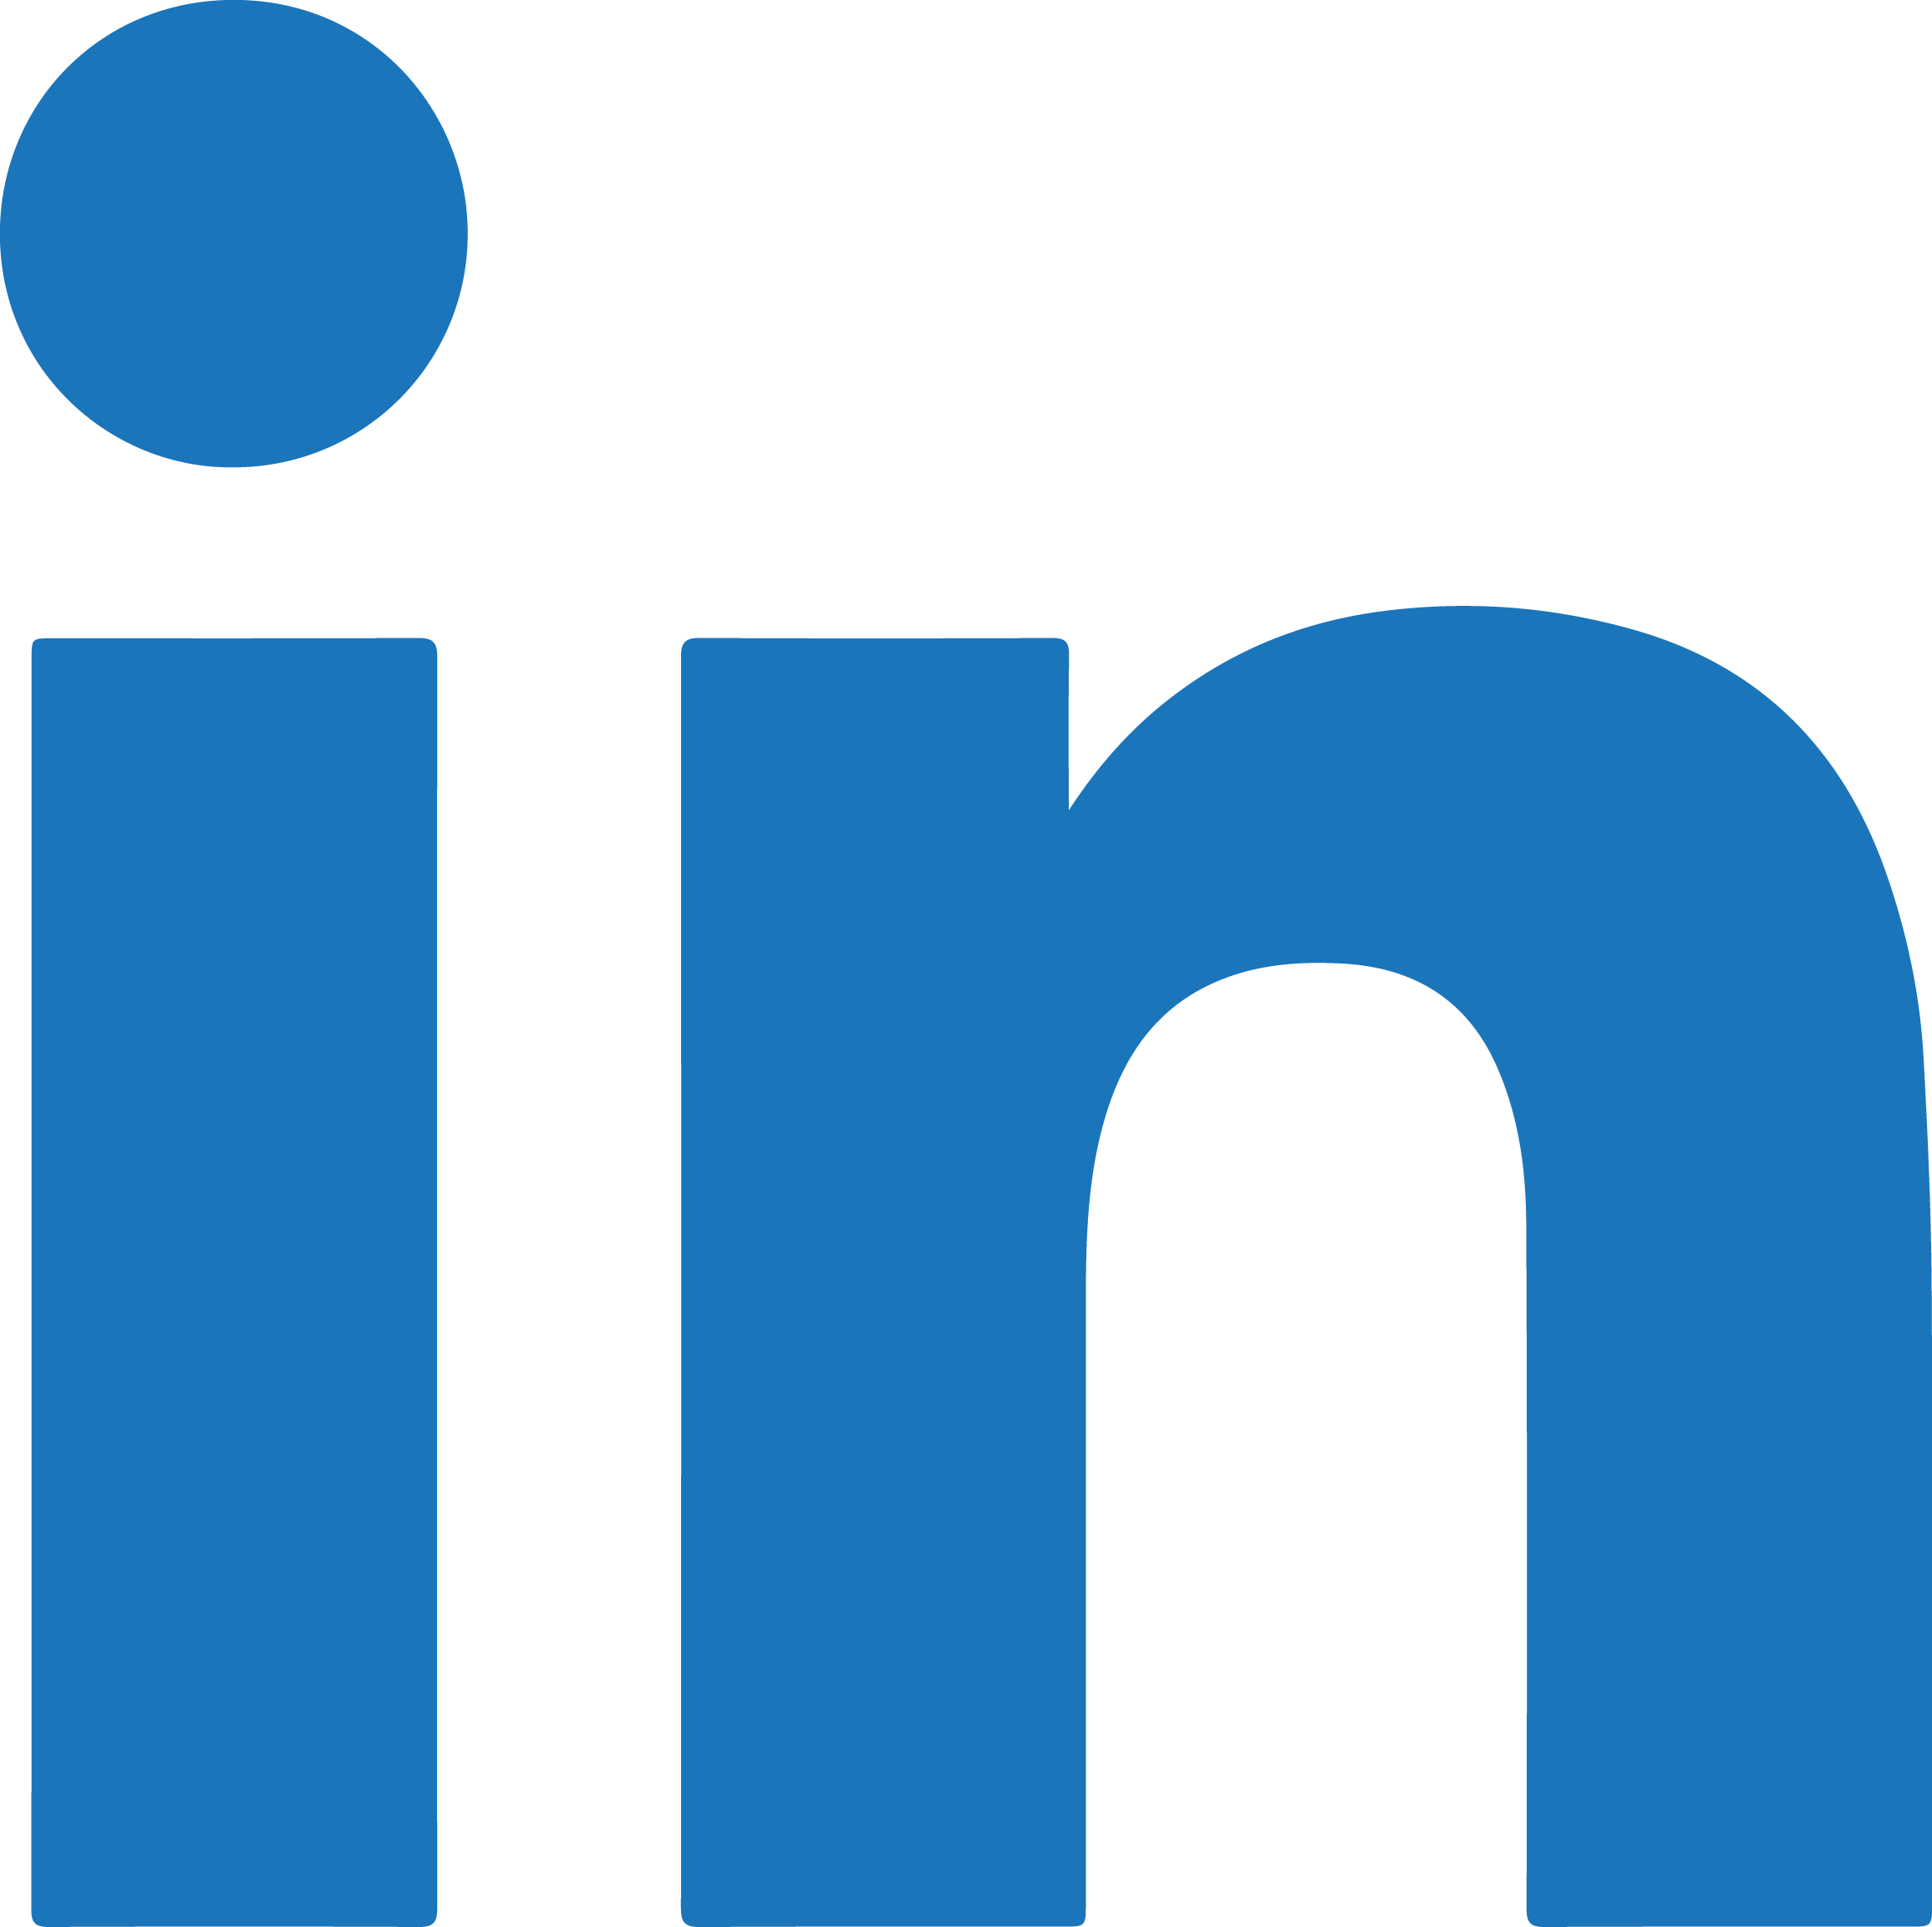 Linkiden Logo - LinkedIn logo PNG images free download